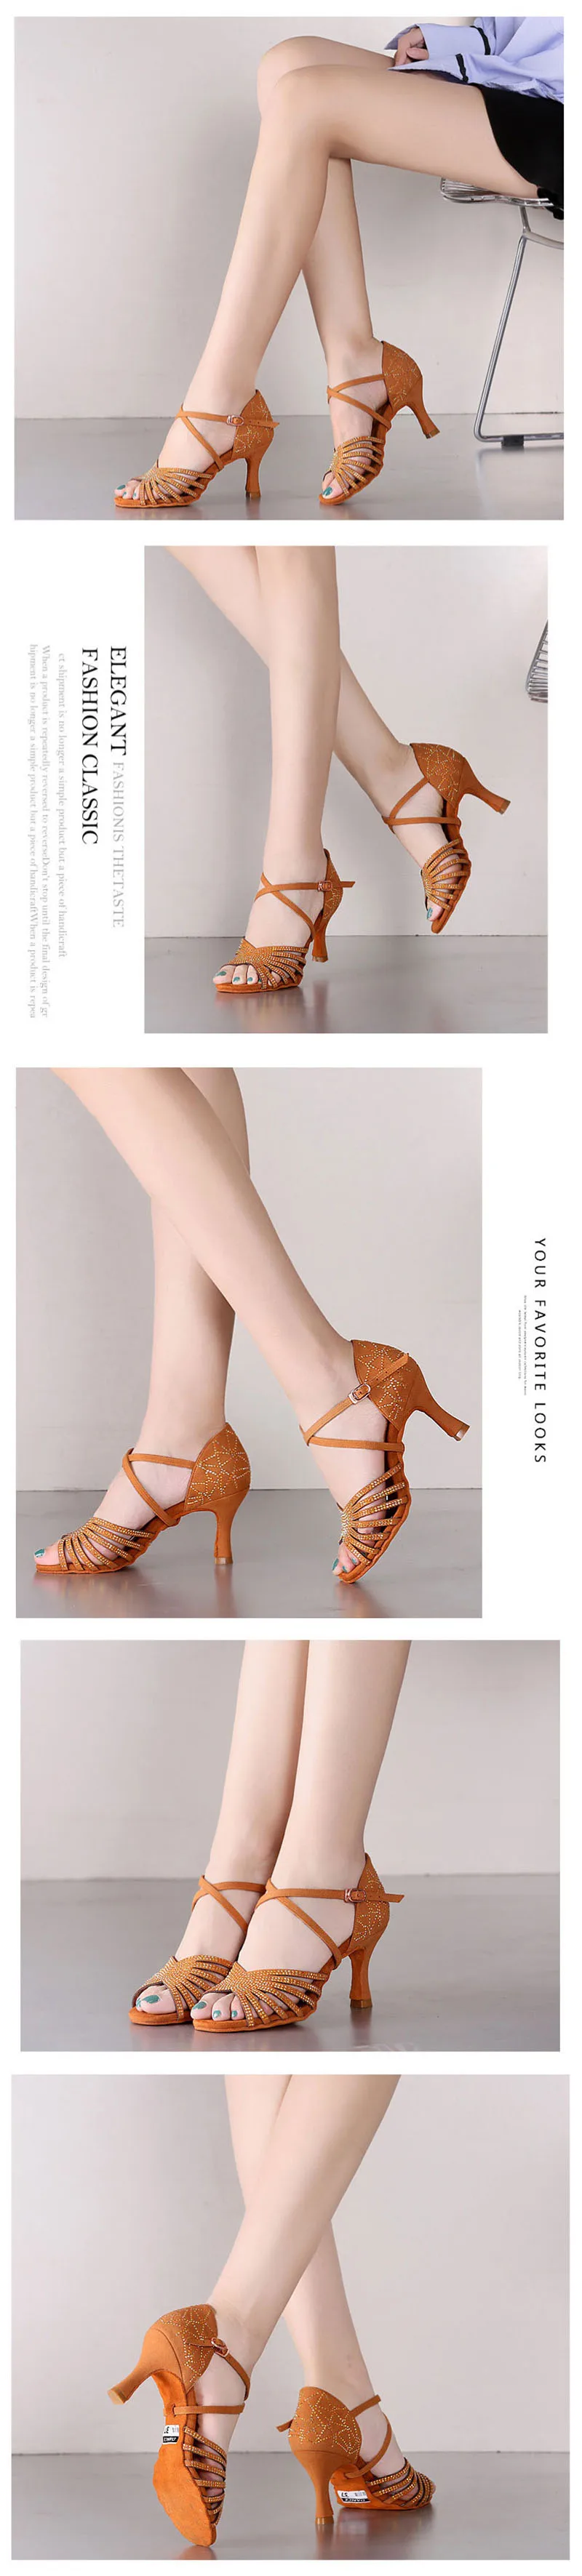 USHINE BD211, каблук 7,5 см, шелковый атлас, абрикосовый, коричневый цвет, туфли для латинских танцев, стразы цвета шампанского, обувь для сальсы, женская обувь, Zapatos De Mujer